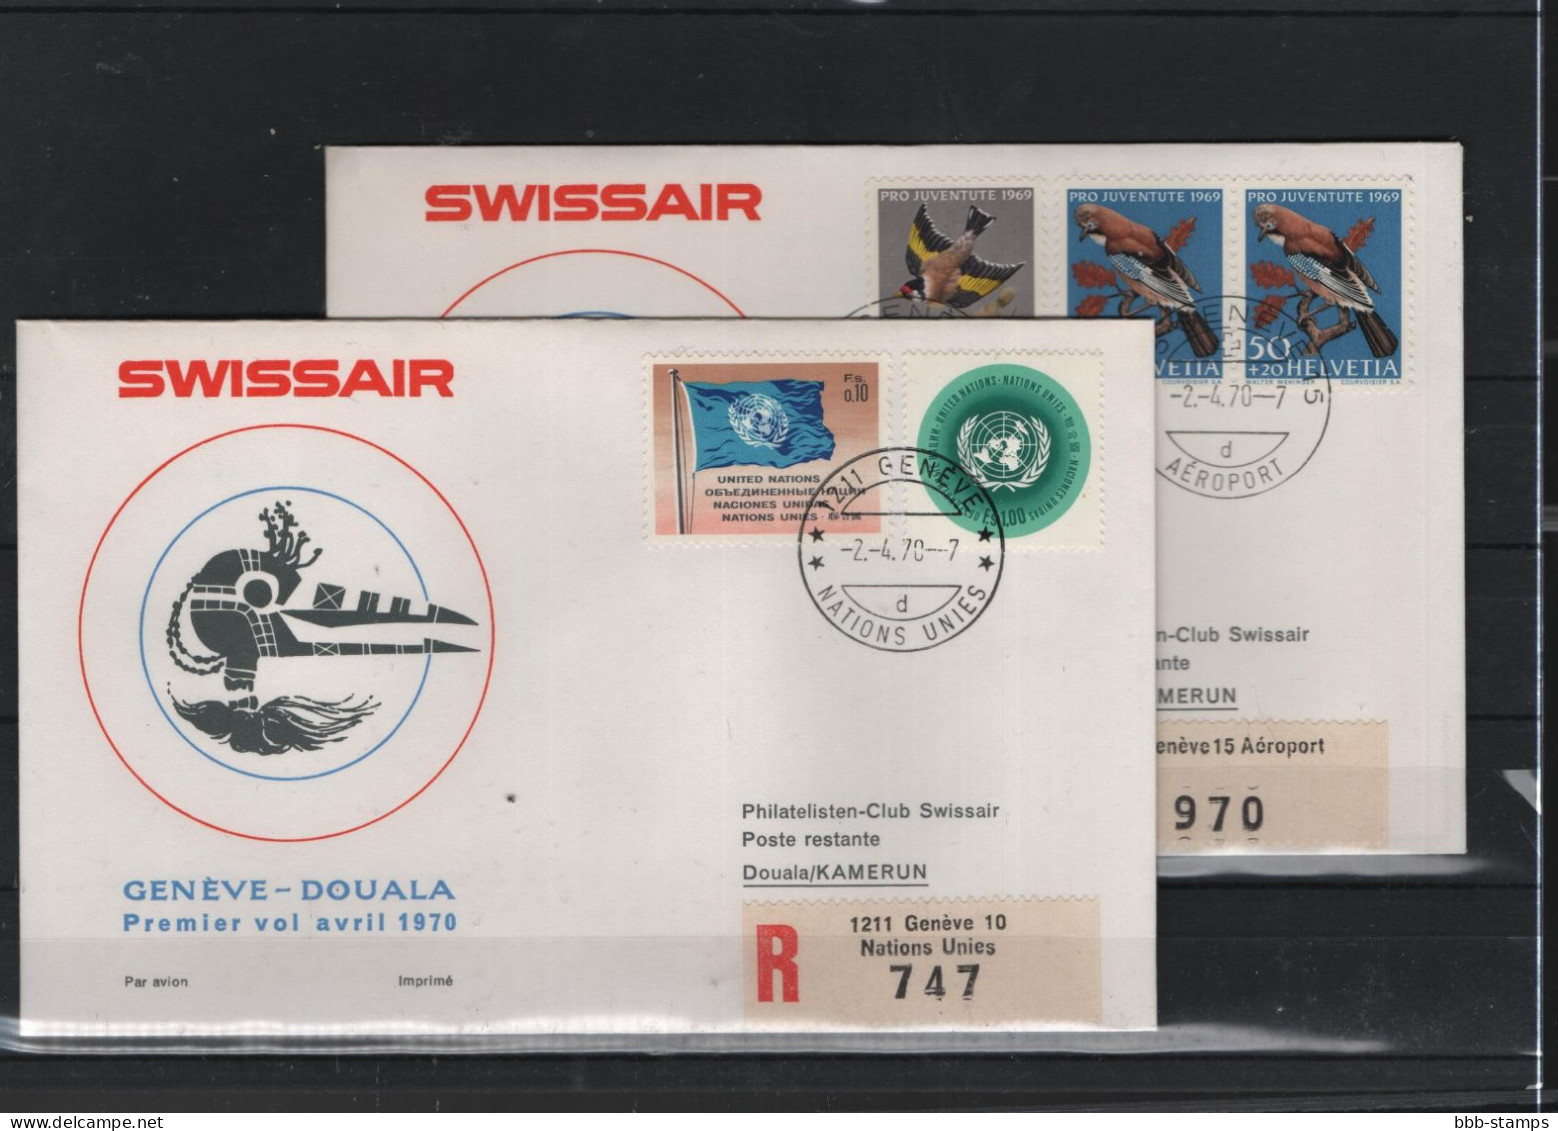 Schweiz Luftpost FFC Swissair 2.4.1970 Genf - Duala VV - Premiers Vols